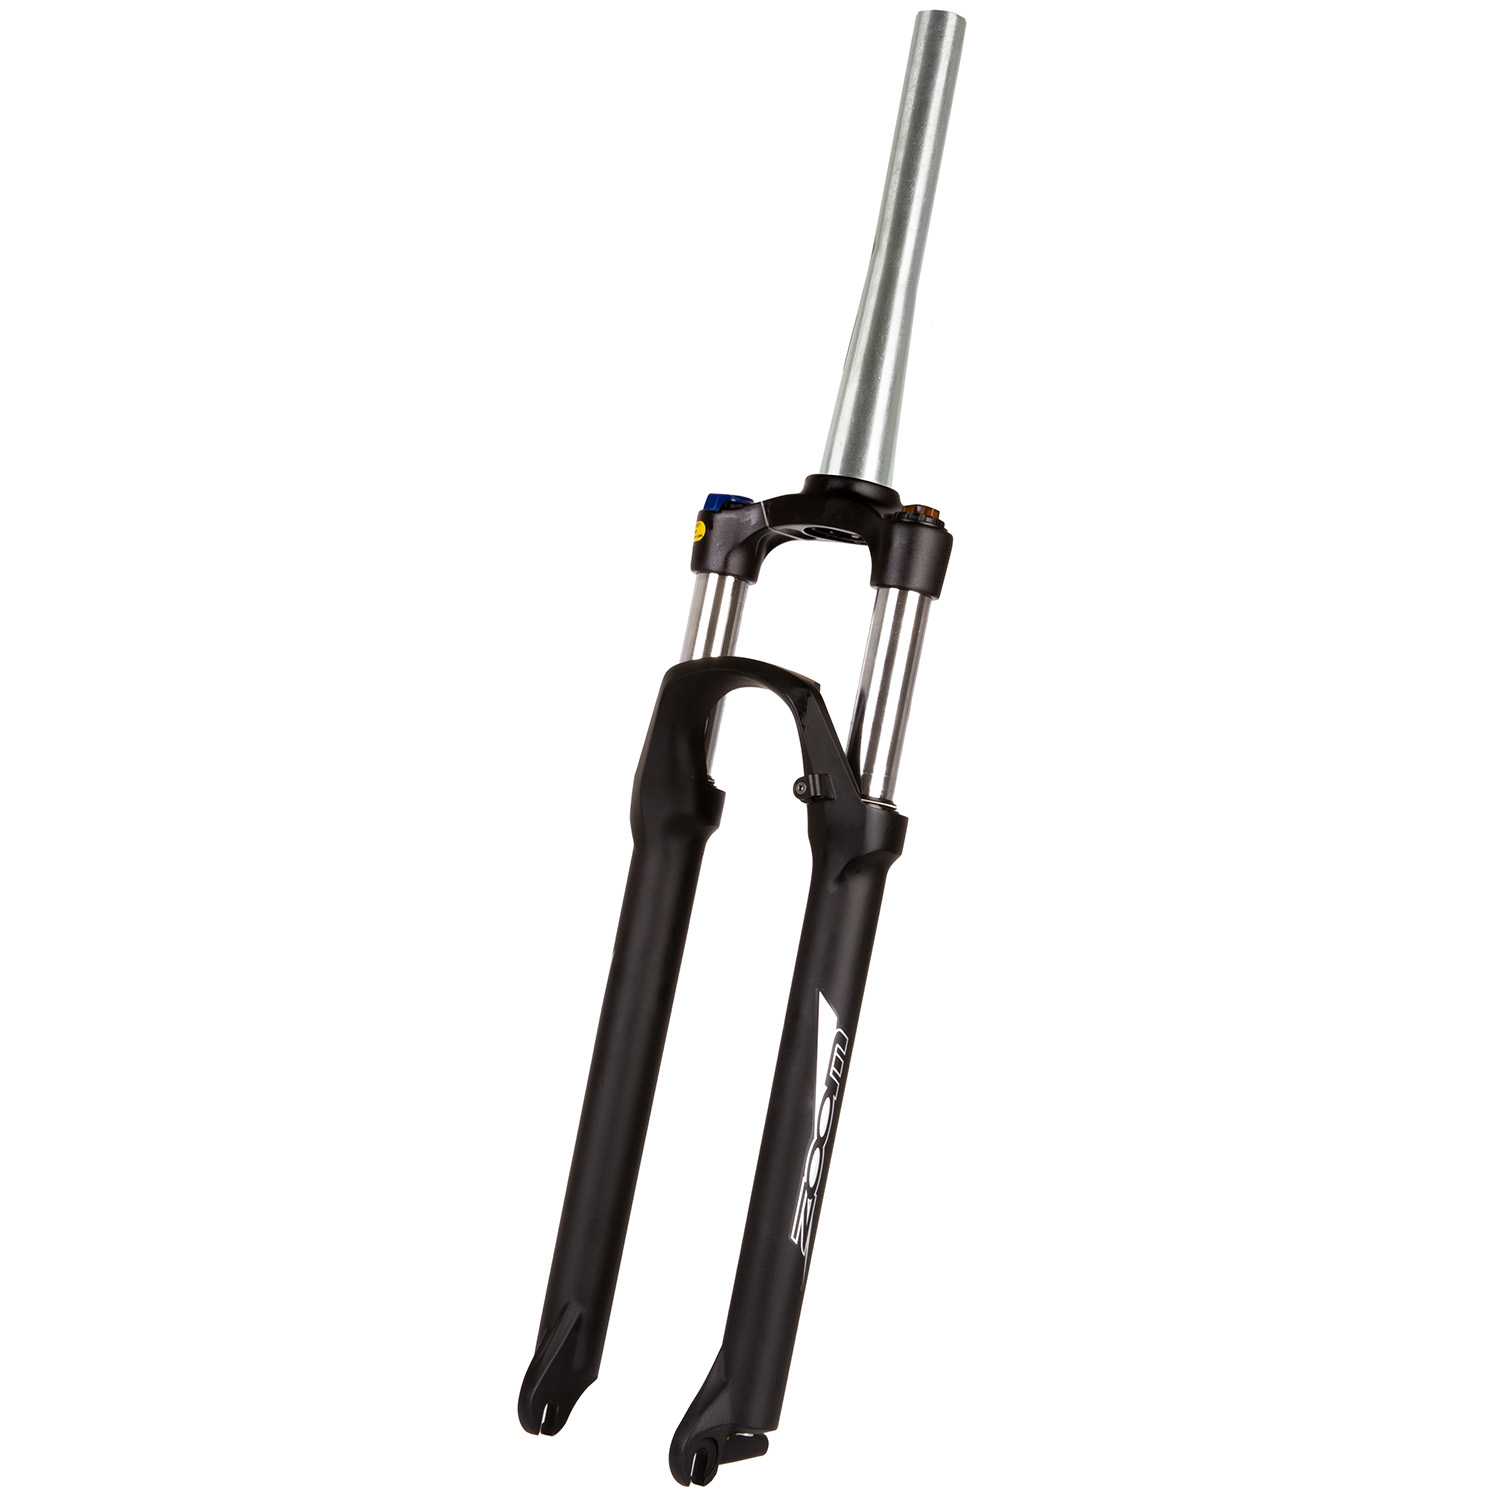 ZOOM Vaxa S 29 suspension fork | Messingschlager